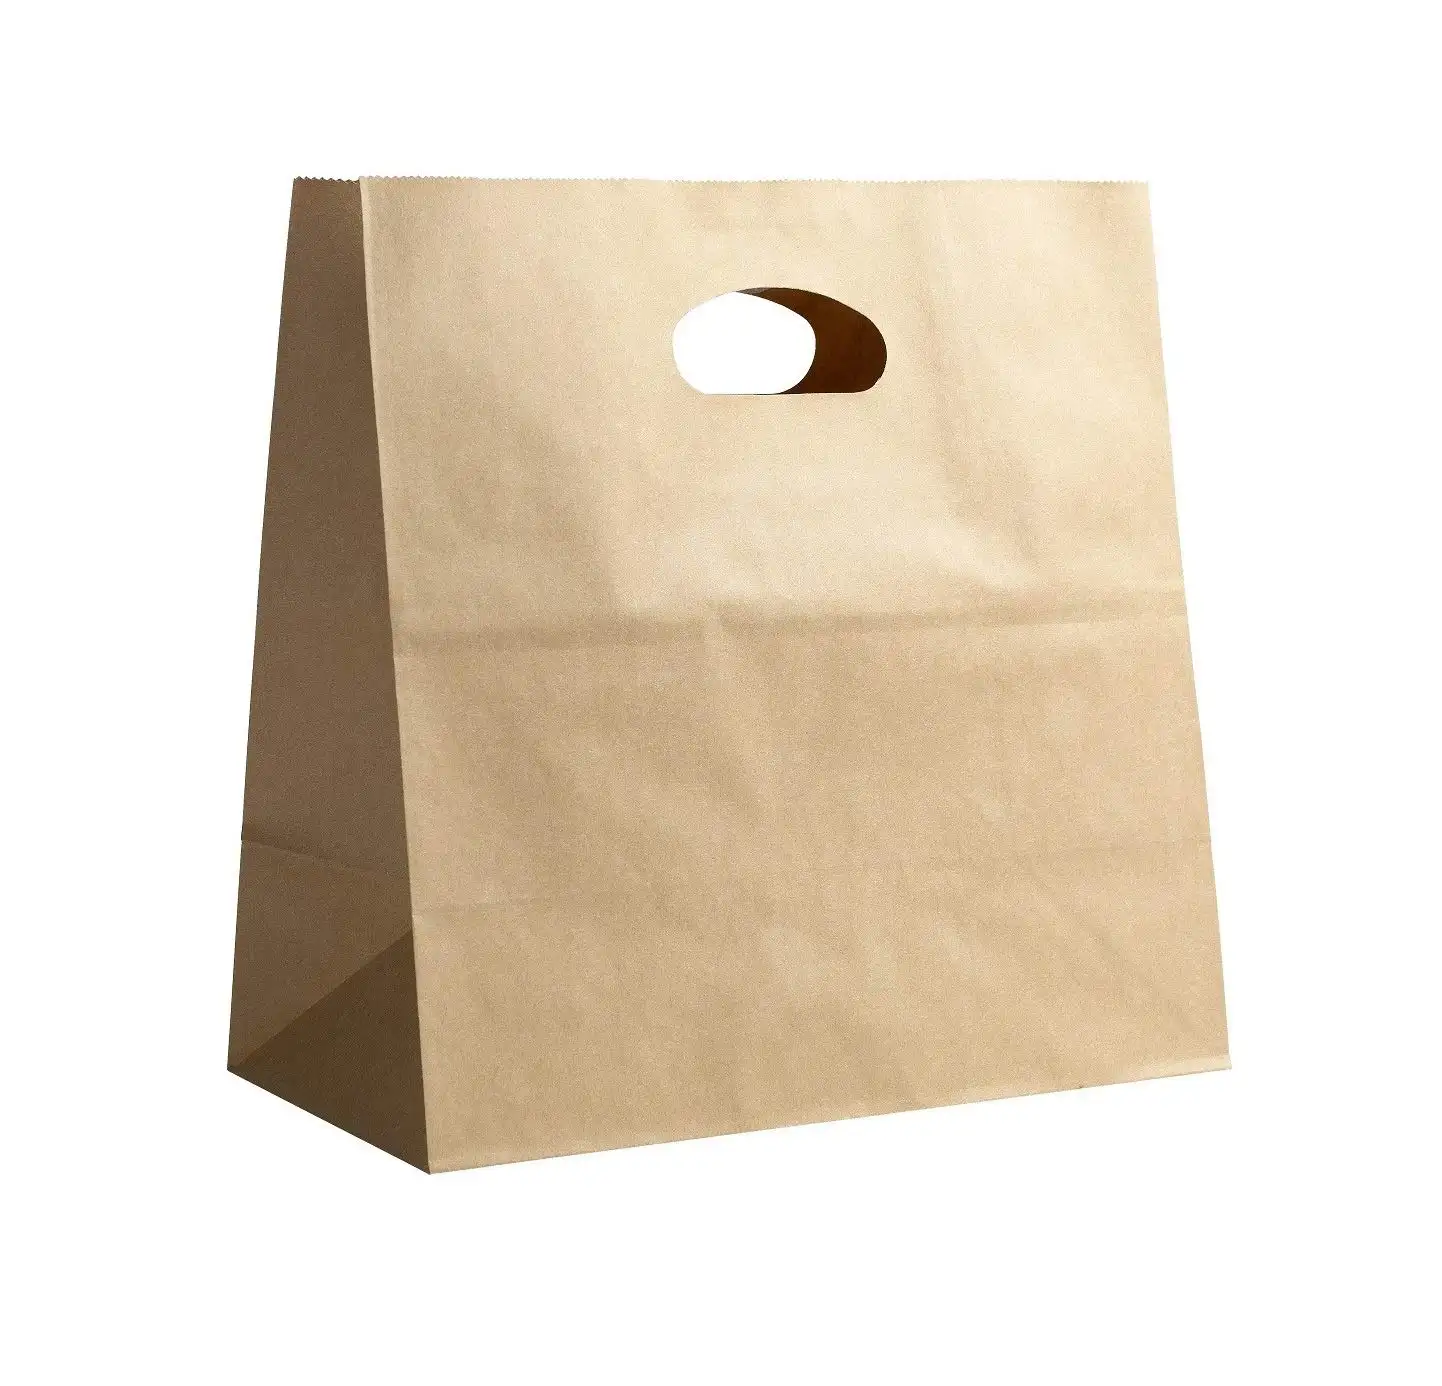 Sacos de papel para embalagem de alimentos, baratas 11 "x 6" x 11 "morre sacola de papel natural com alça para embalagem de alimentos